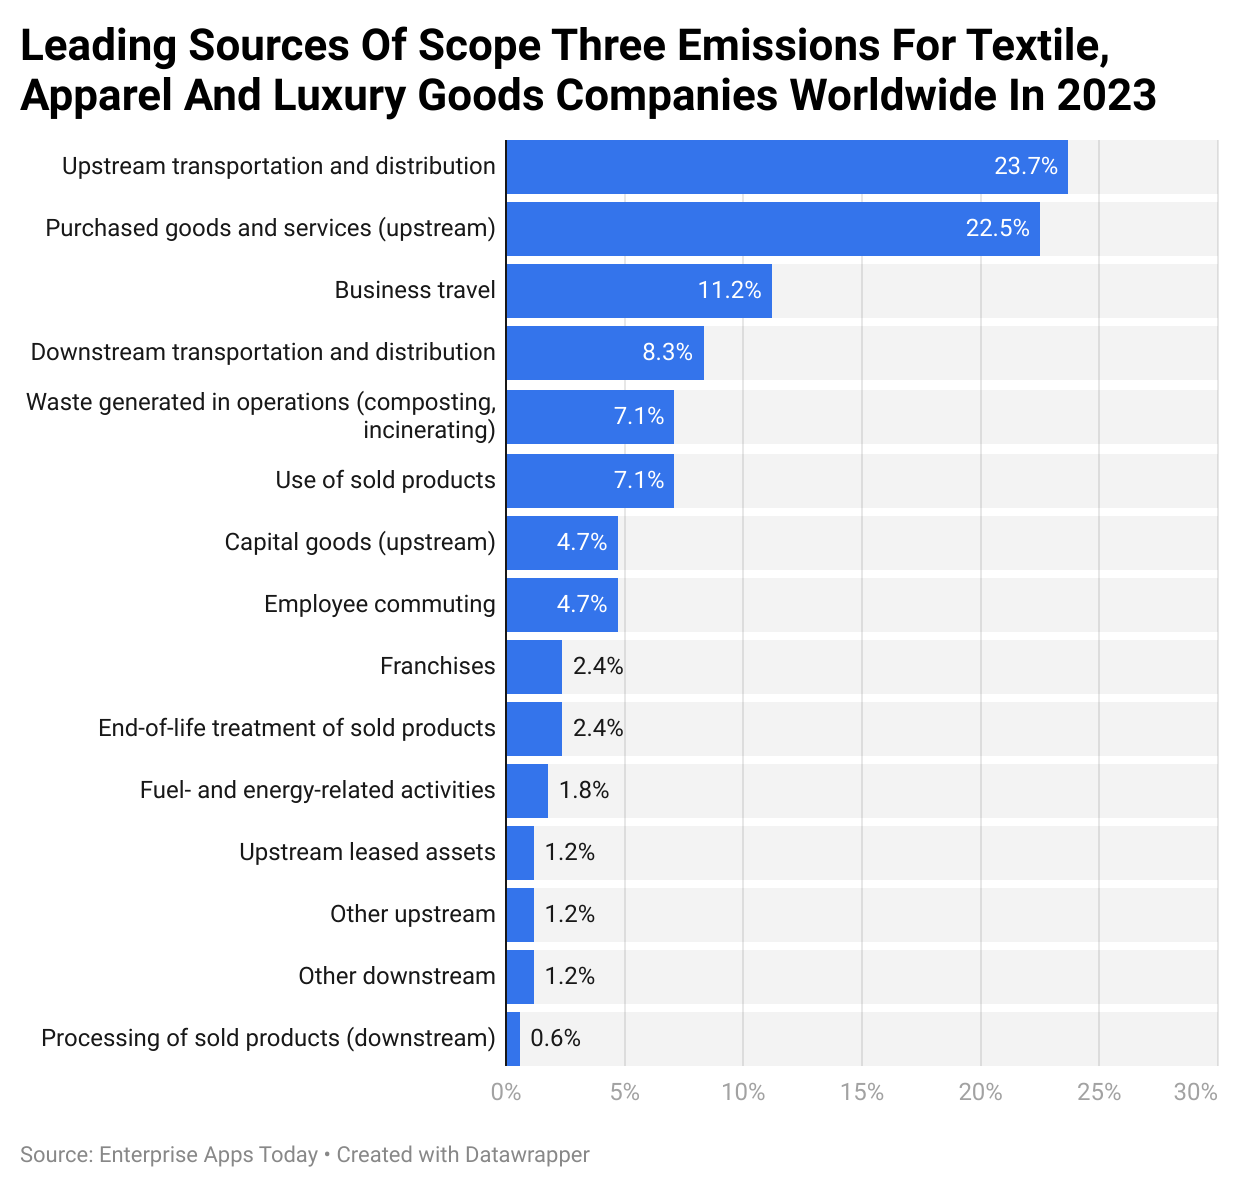 Toonaangevende bronnen van scope drie-emissies voor textiel-, kleding- en luxegoederenbedrijven wereldwijd in 2023